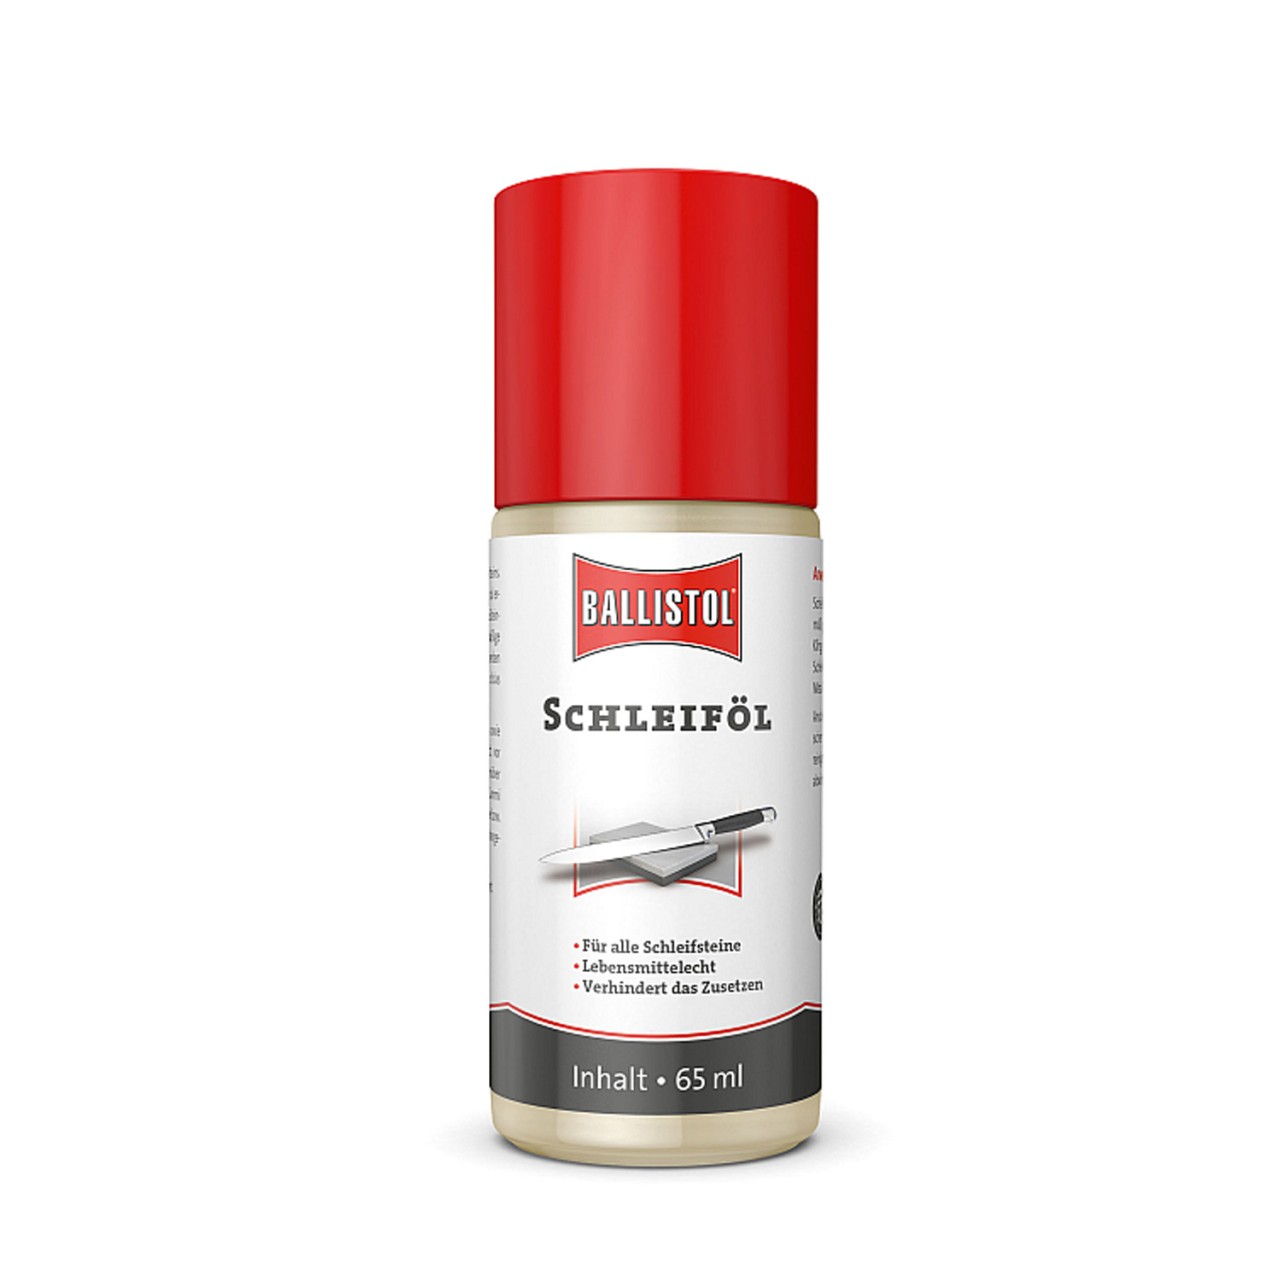 BALLISTOL Schleif-Öl – Ideal zum Messerschleifen – 65ml